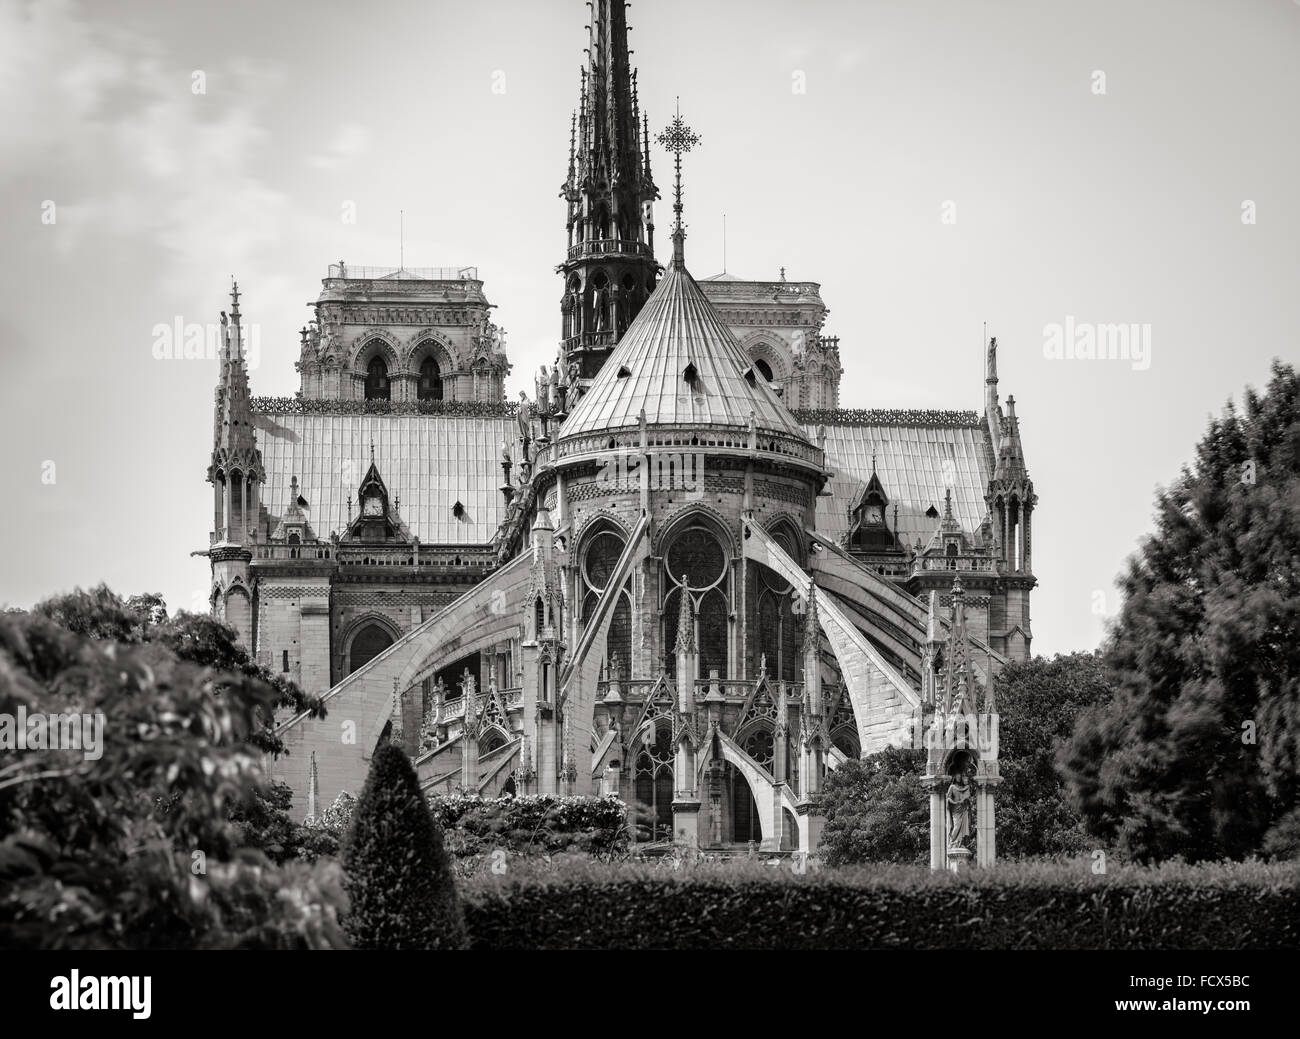 Notre Dame de Paris Kathedrale Architekturdetail in schwarz-weiß & zeigt Strebebögen, die beiden Türme und spire. Frankreich Stockfoto